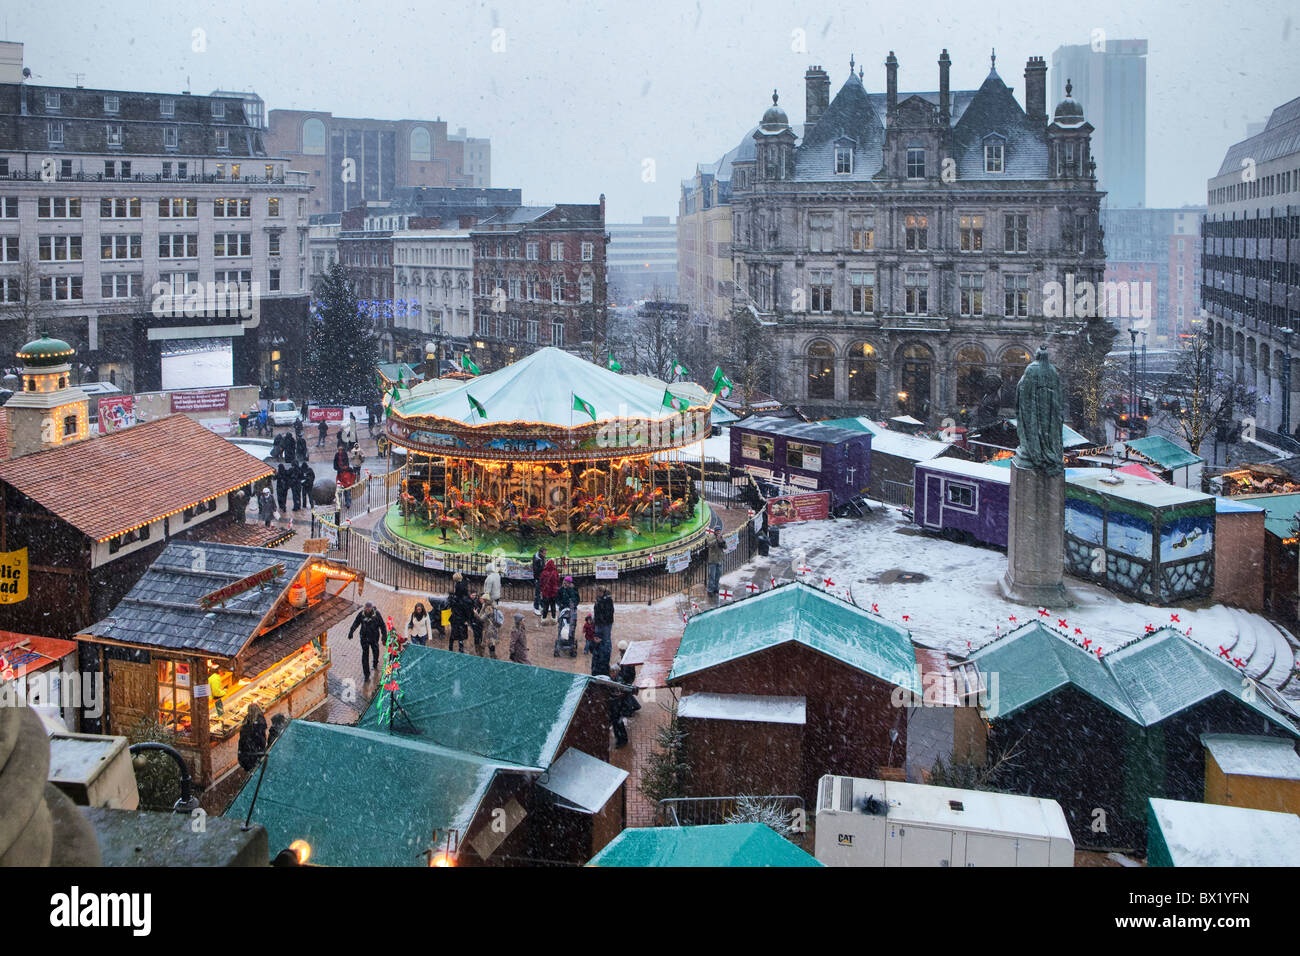 Le marché de Noël de Francfort Birmingham à Victoria Square, Birmingham, West Midlands, England, UK Banque D'Images